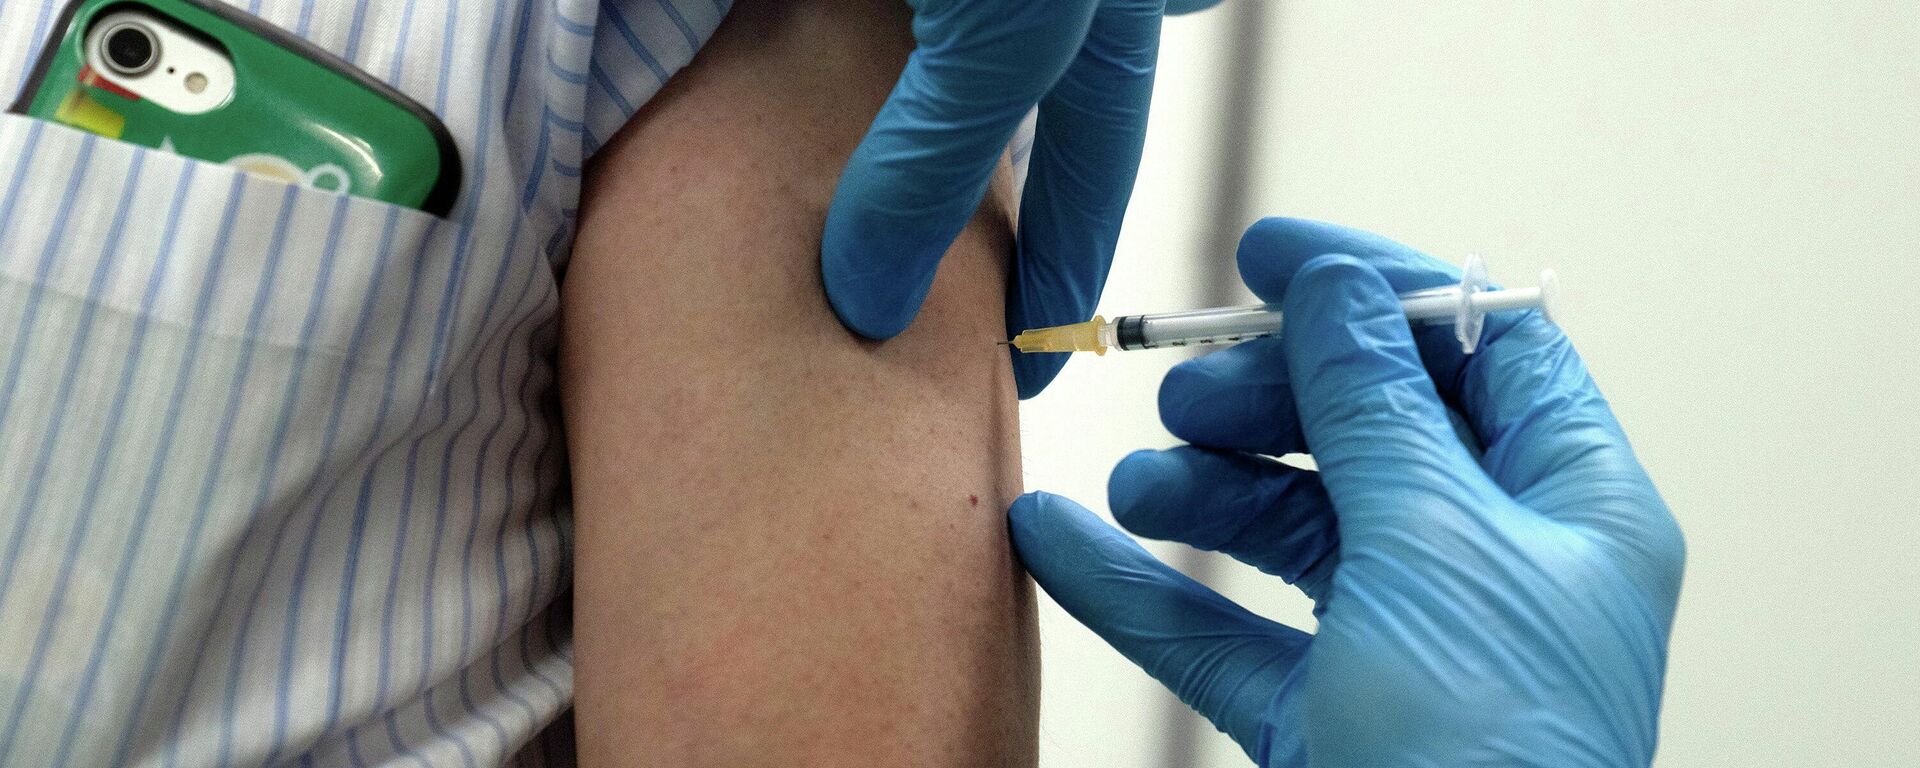 Медработник делает прививку от коронавируса вакциной Moderna - Sputnik Литва, 1920, 20.06.2021